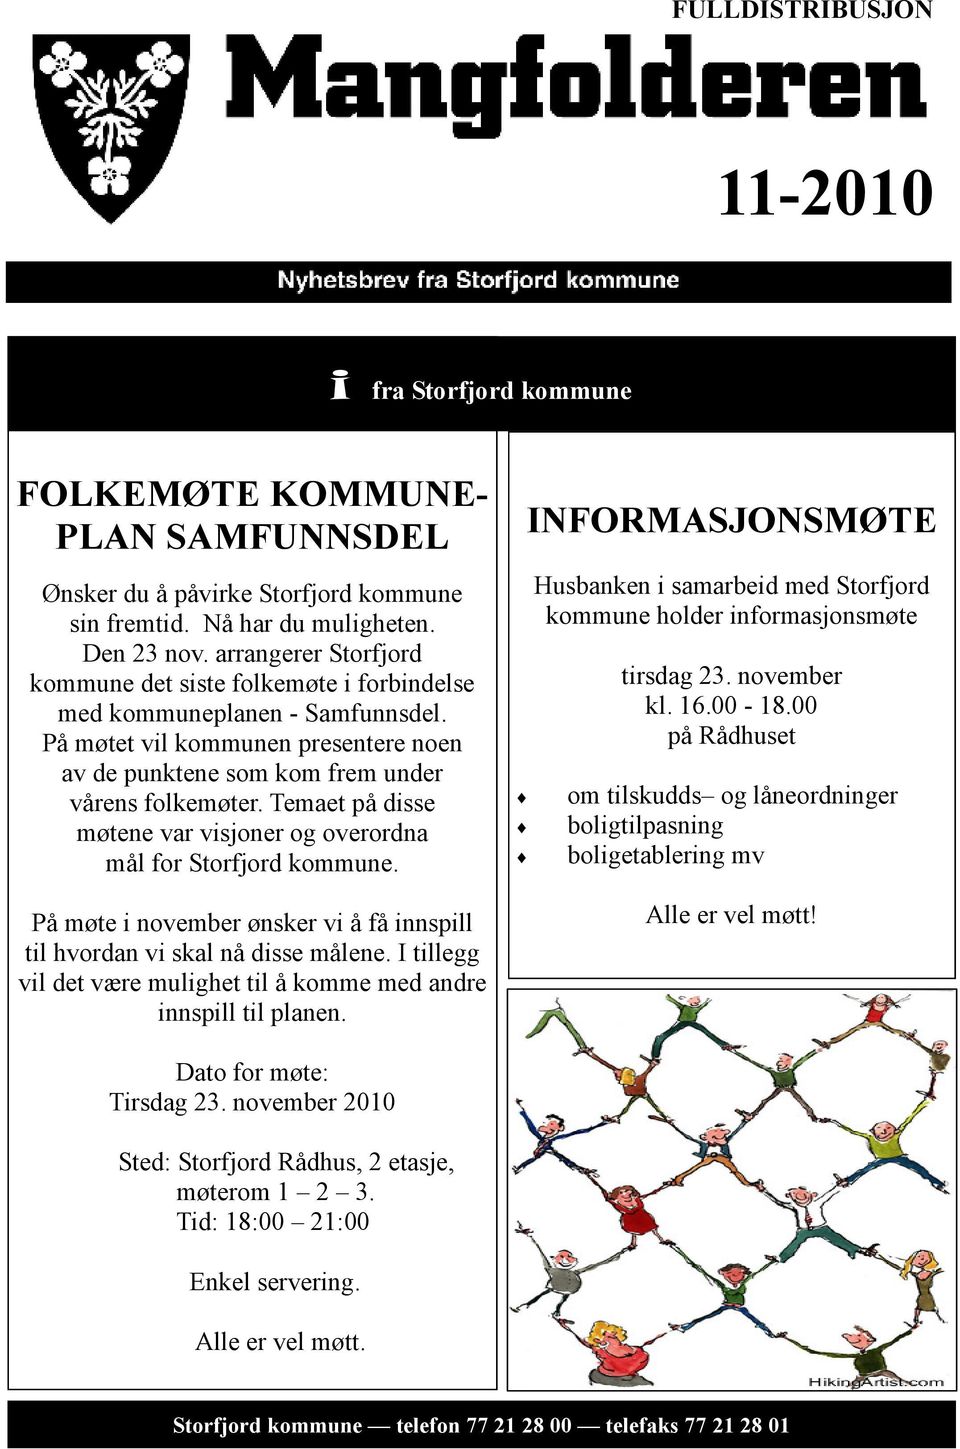 Temaet på disse møtene var visjoner og overordna mål for Storfjord kommune. På møte i november ønsker vi å få innspill til hvordan vi skal nå disse målene.